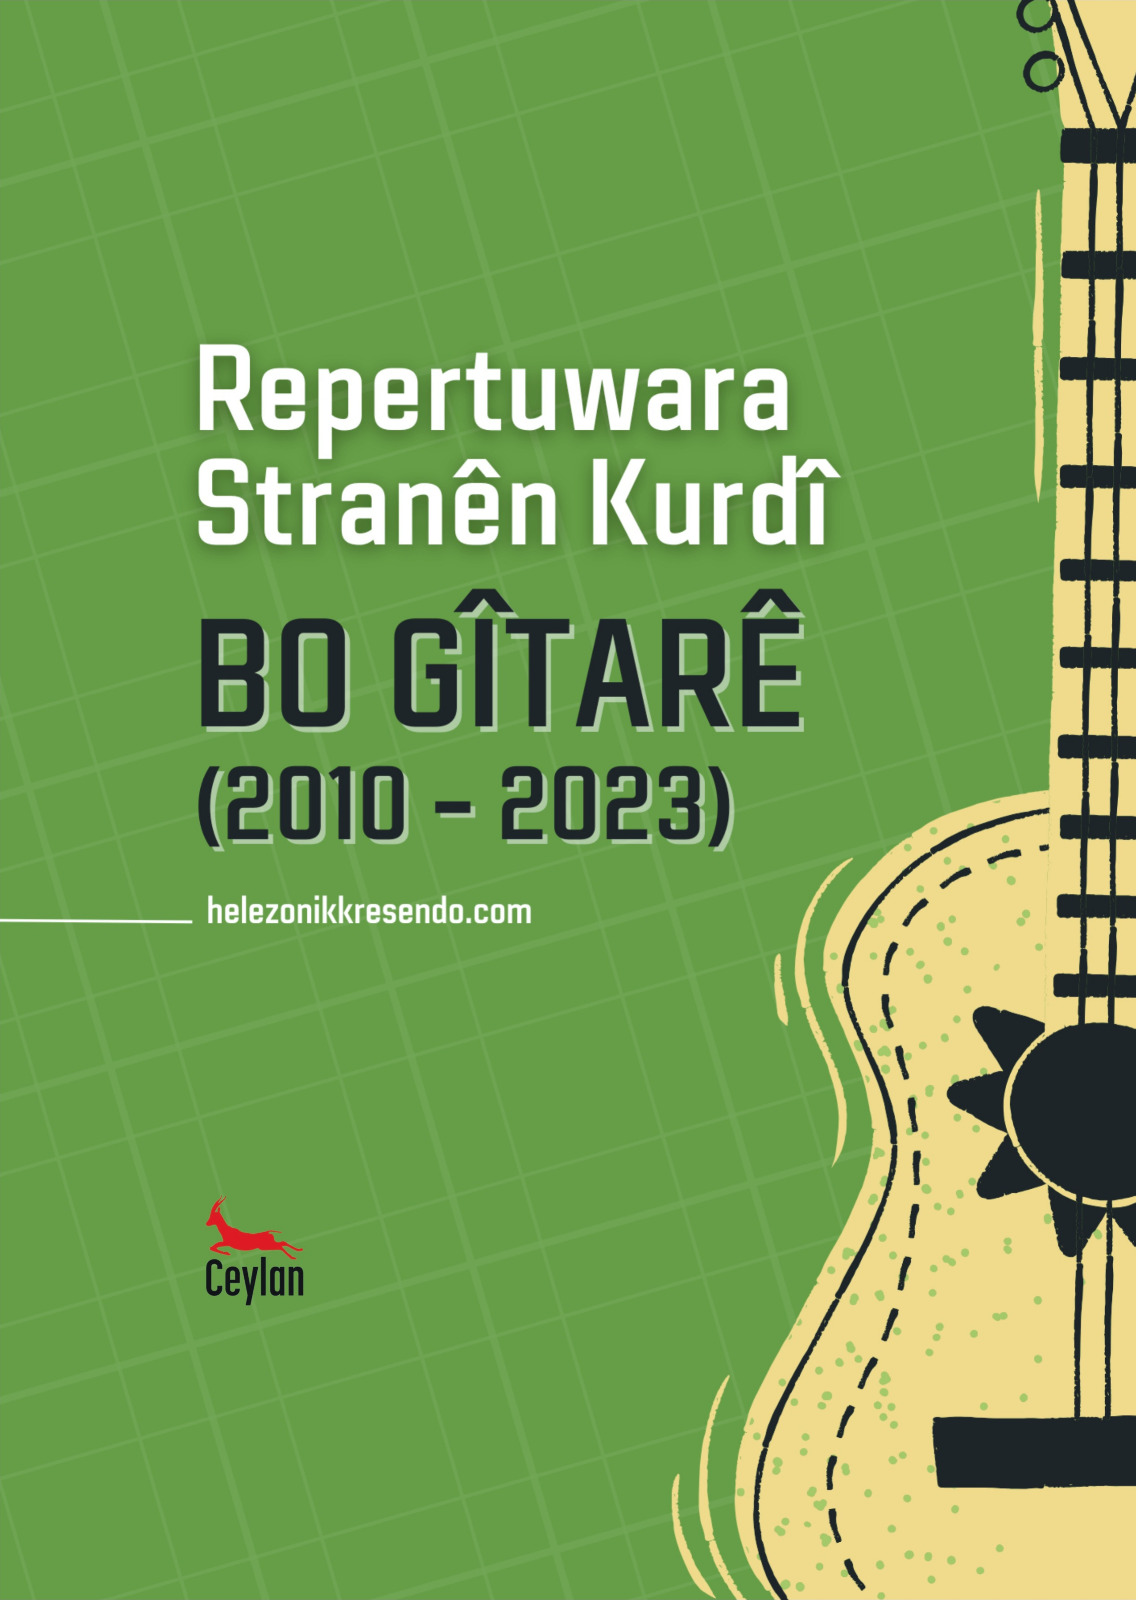 Kürtçe Gitar Repertuarı kitabı